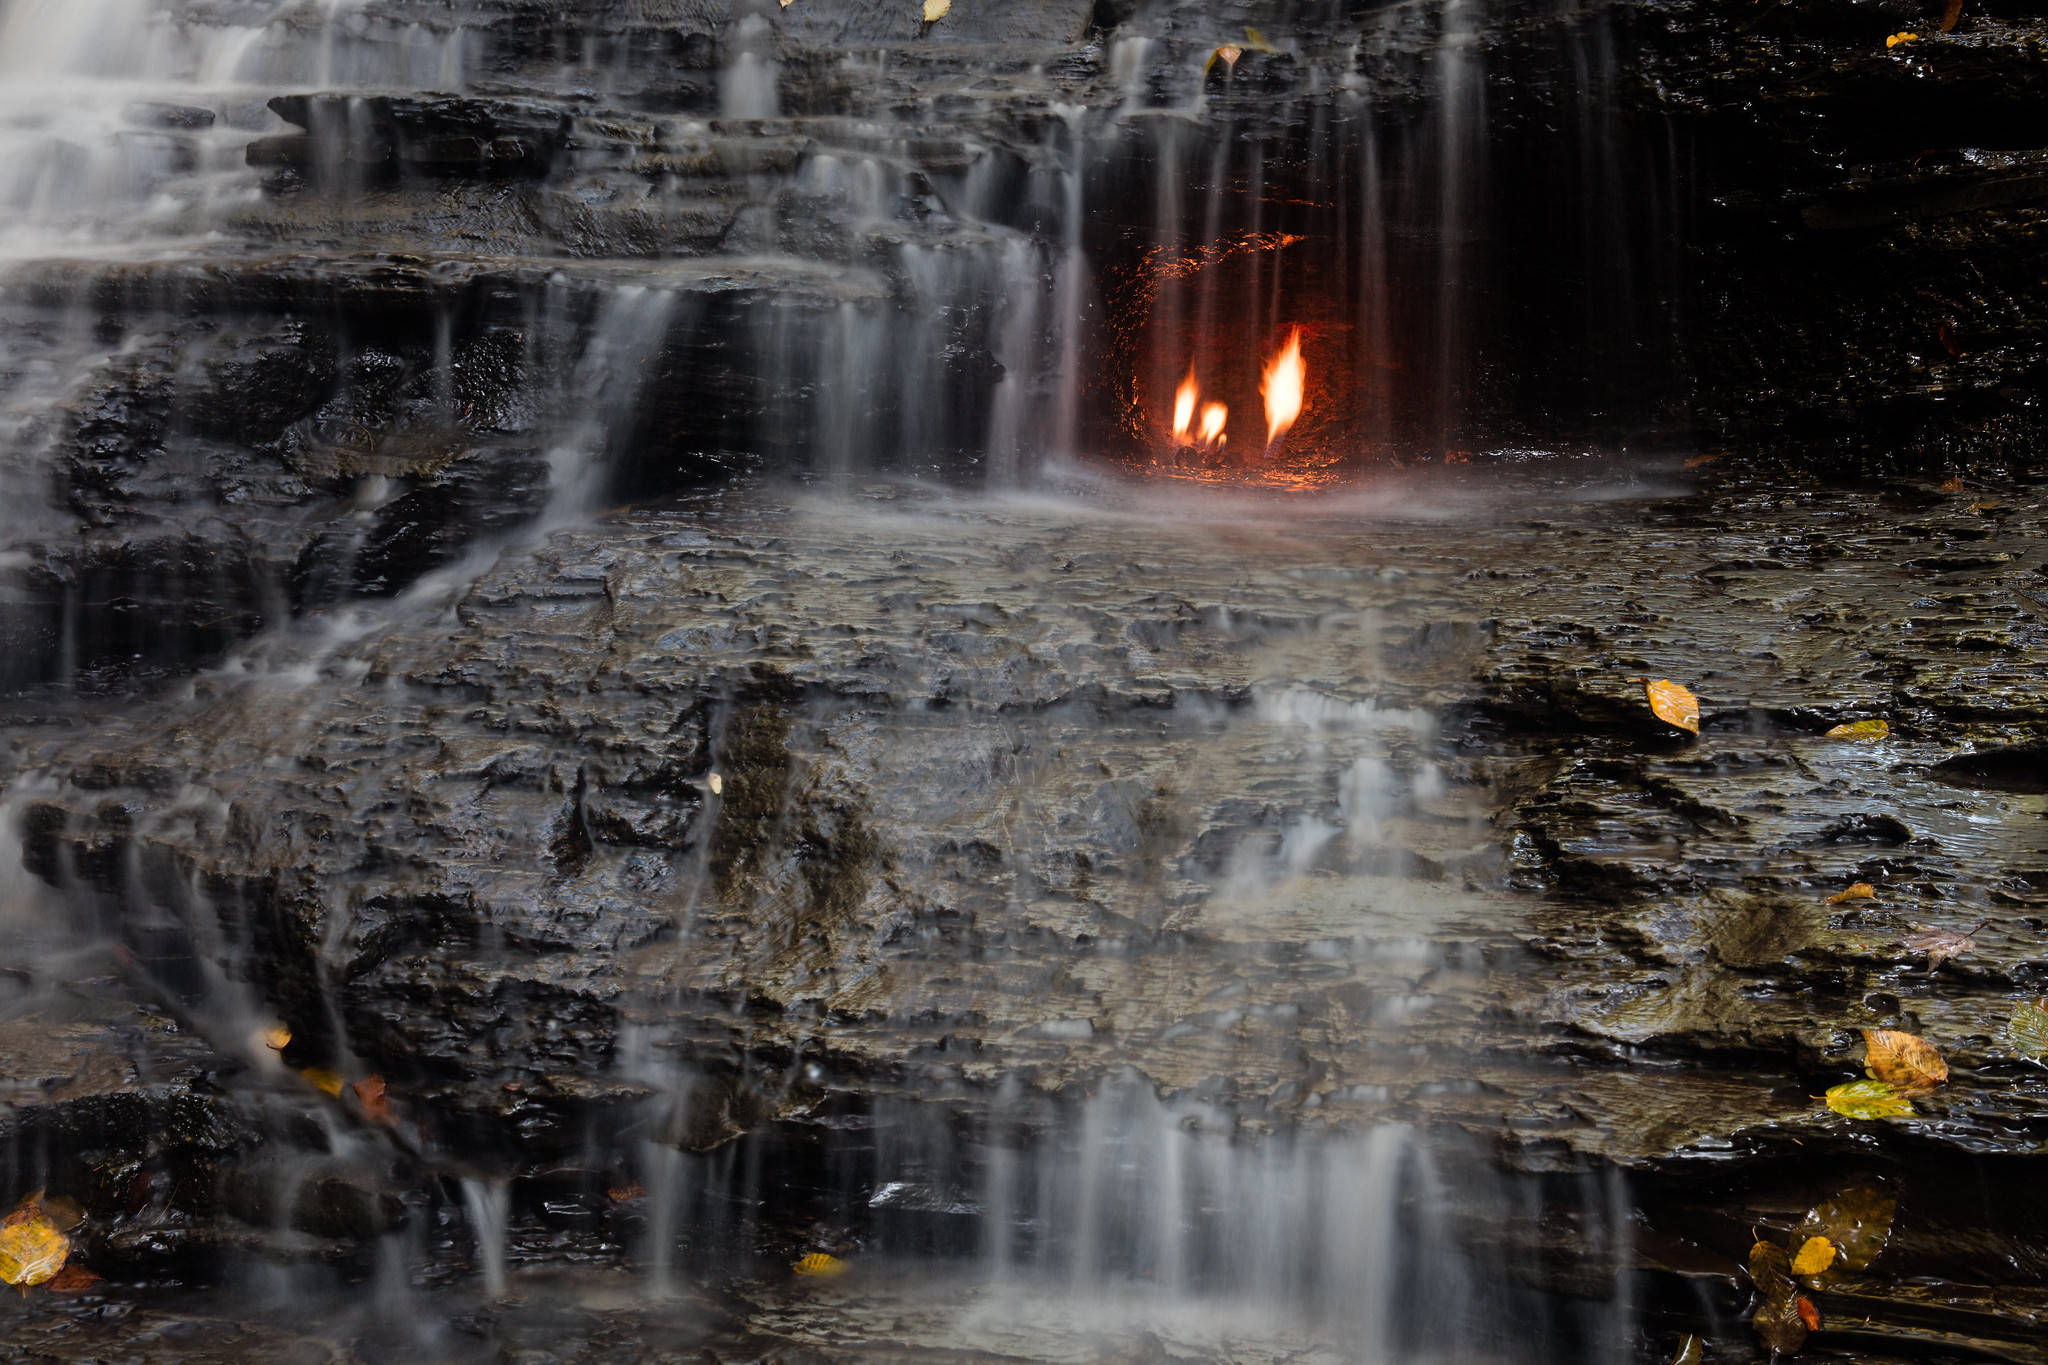 原创水与火共生的火焰瀑布:火光何时点燃是谜,专家:理论上永恒不灭